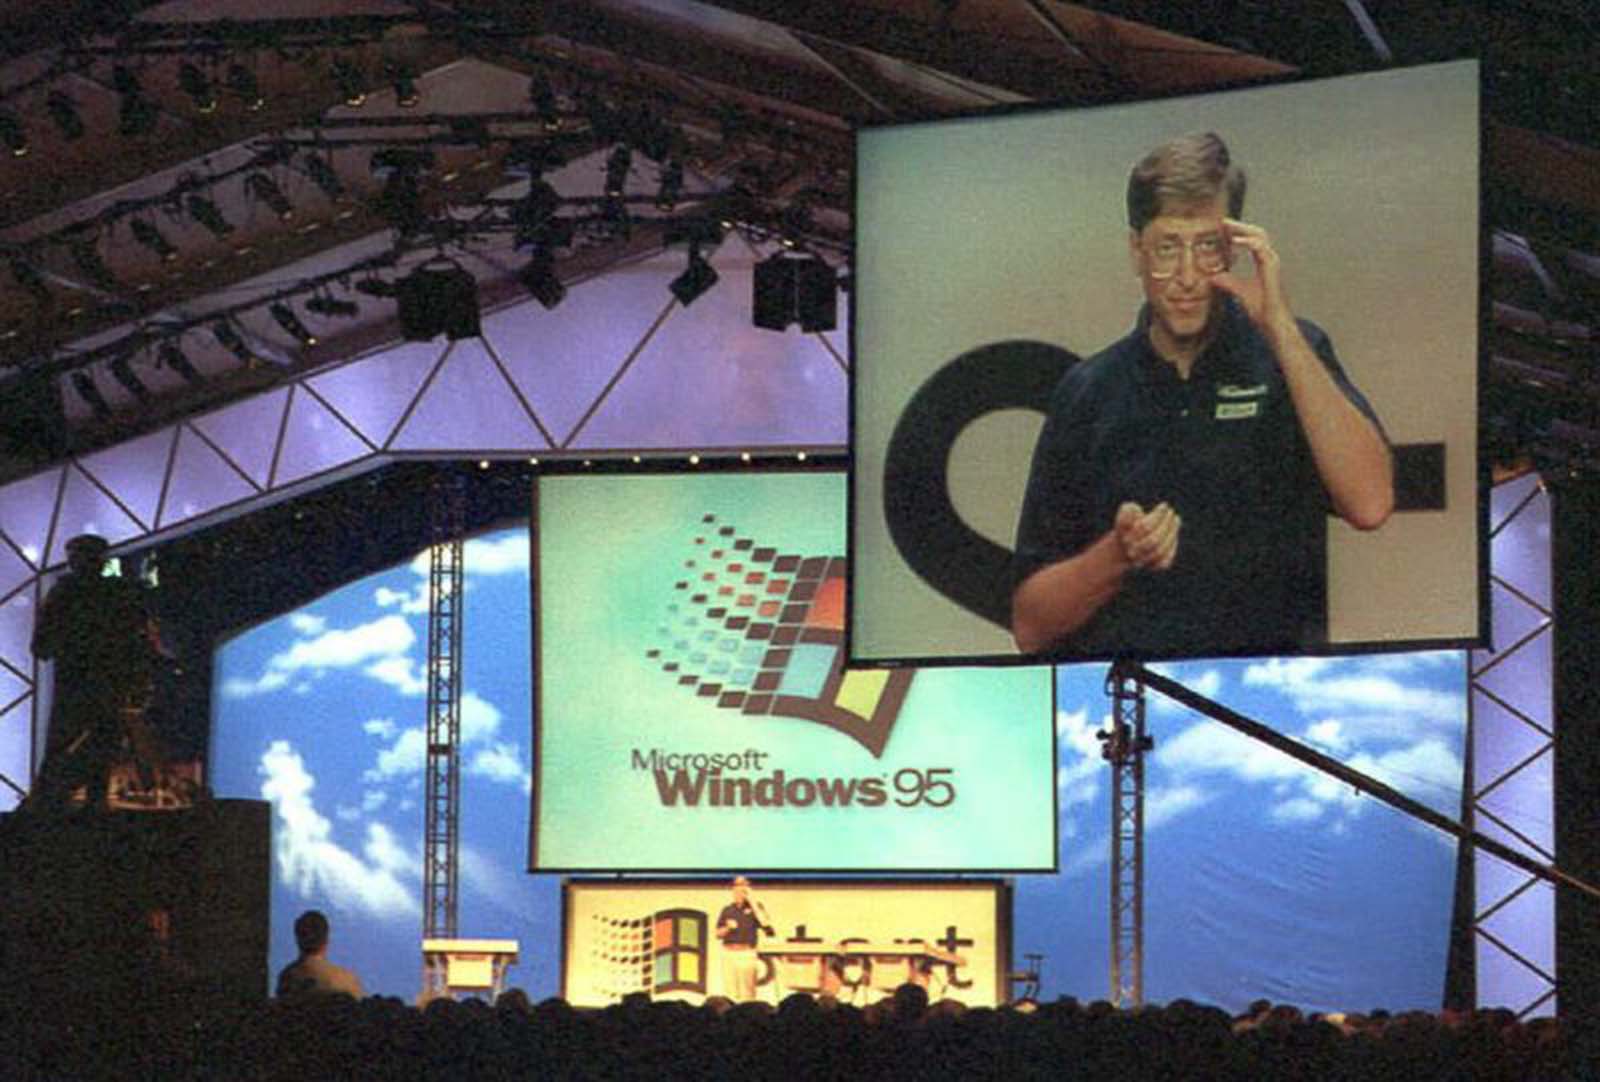 Windows 95 launch%2B%25286%2529 - Relembre a enorme histeria do lançamento do Windows 95 em 1995